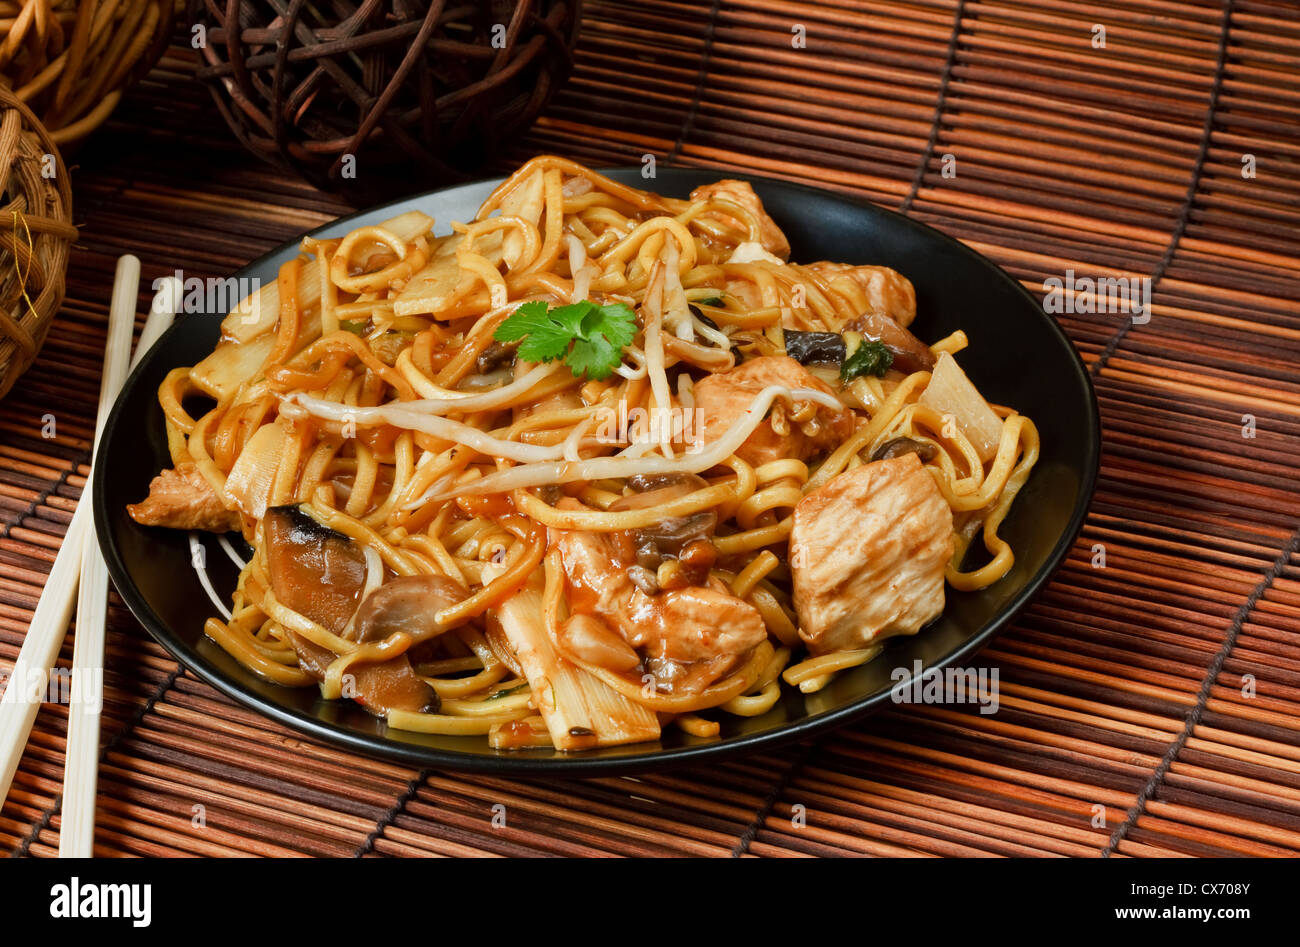 Chow mein au poulet une nourriture chinoise populaire disponible à emporter Banque D'Images